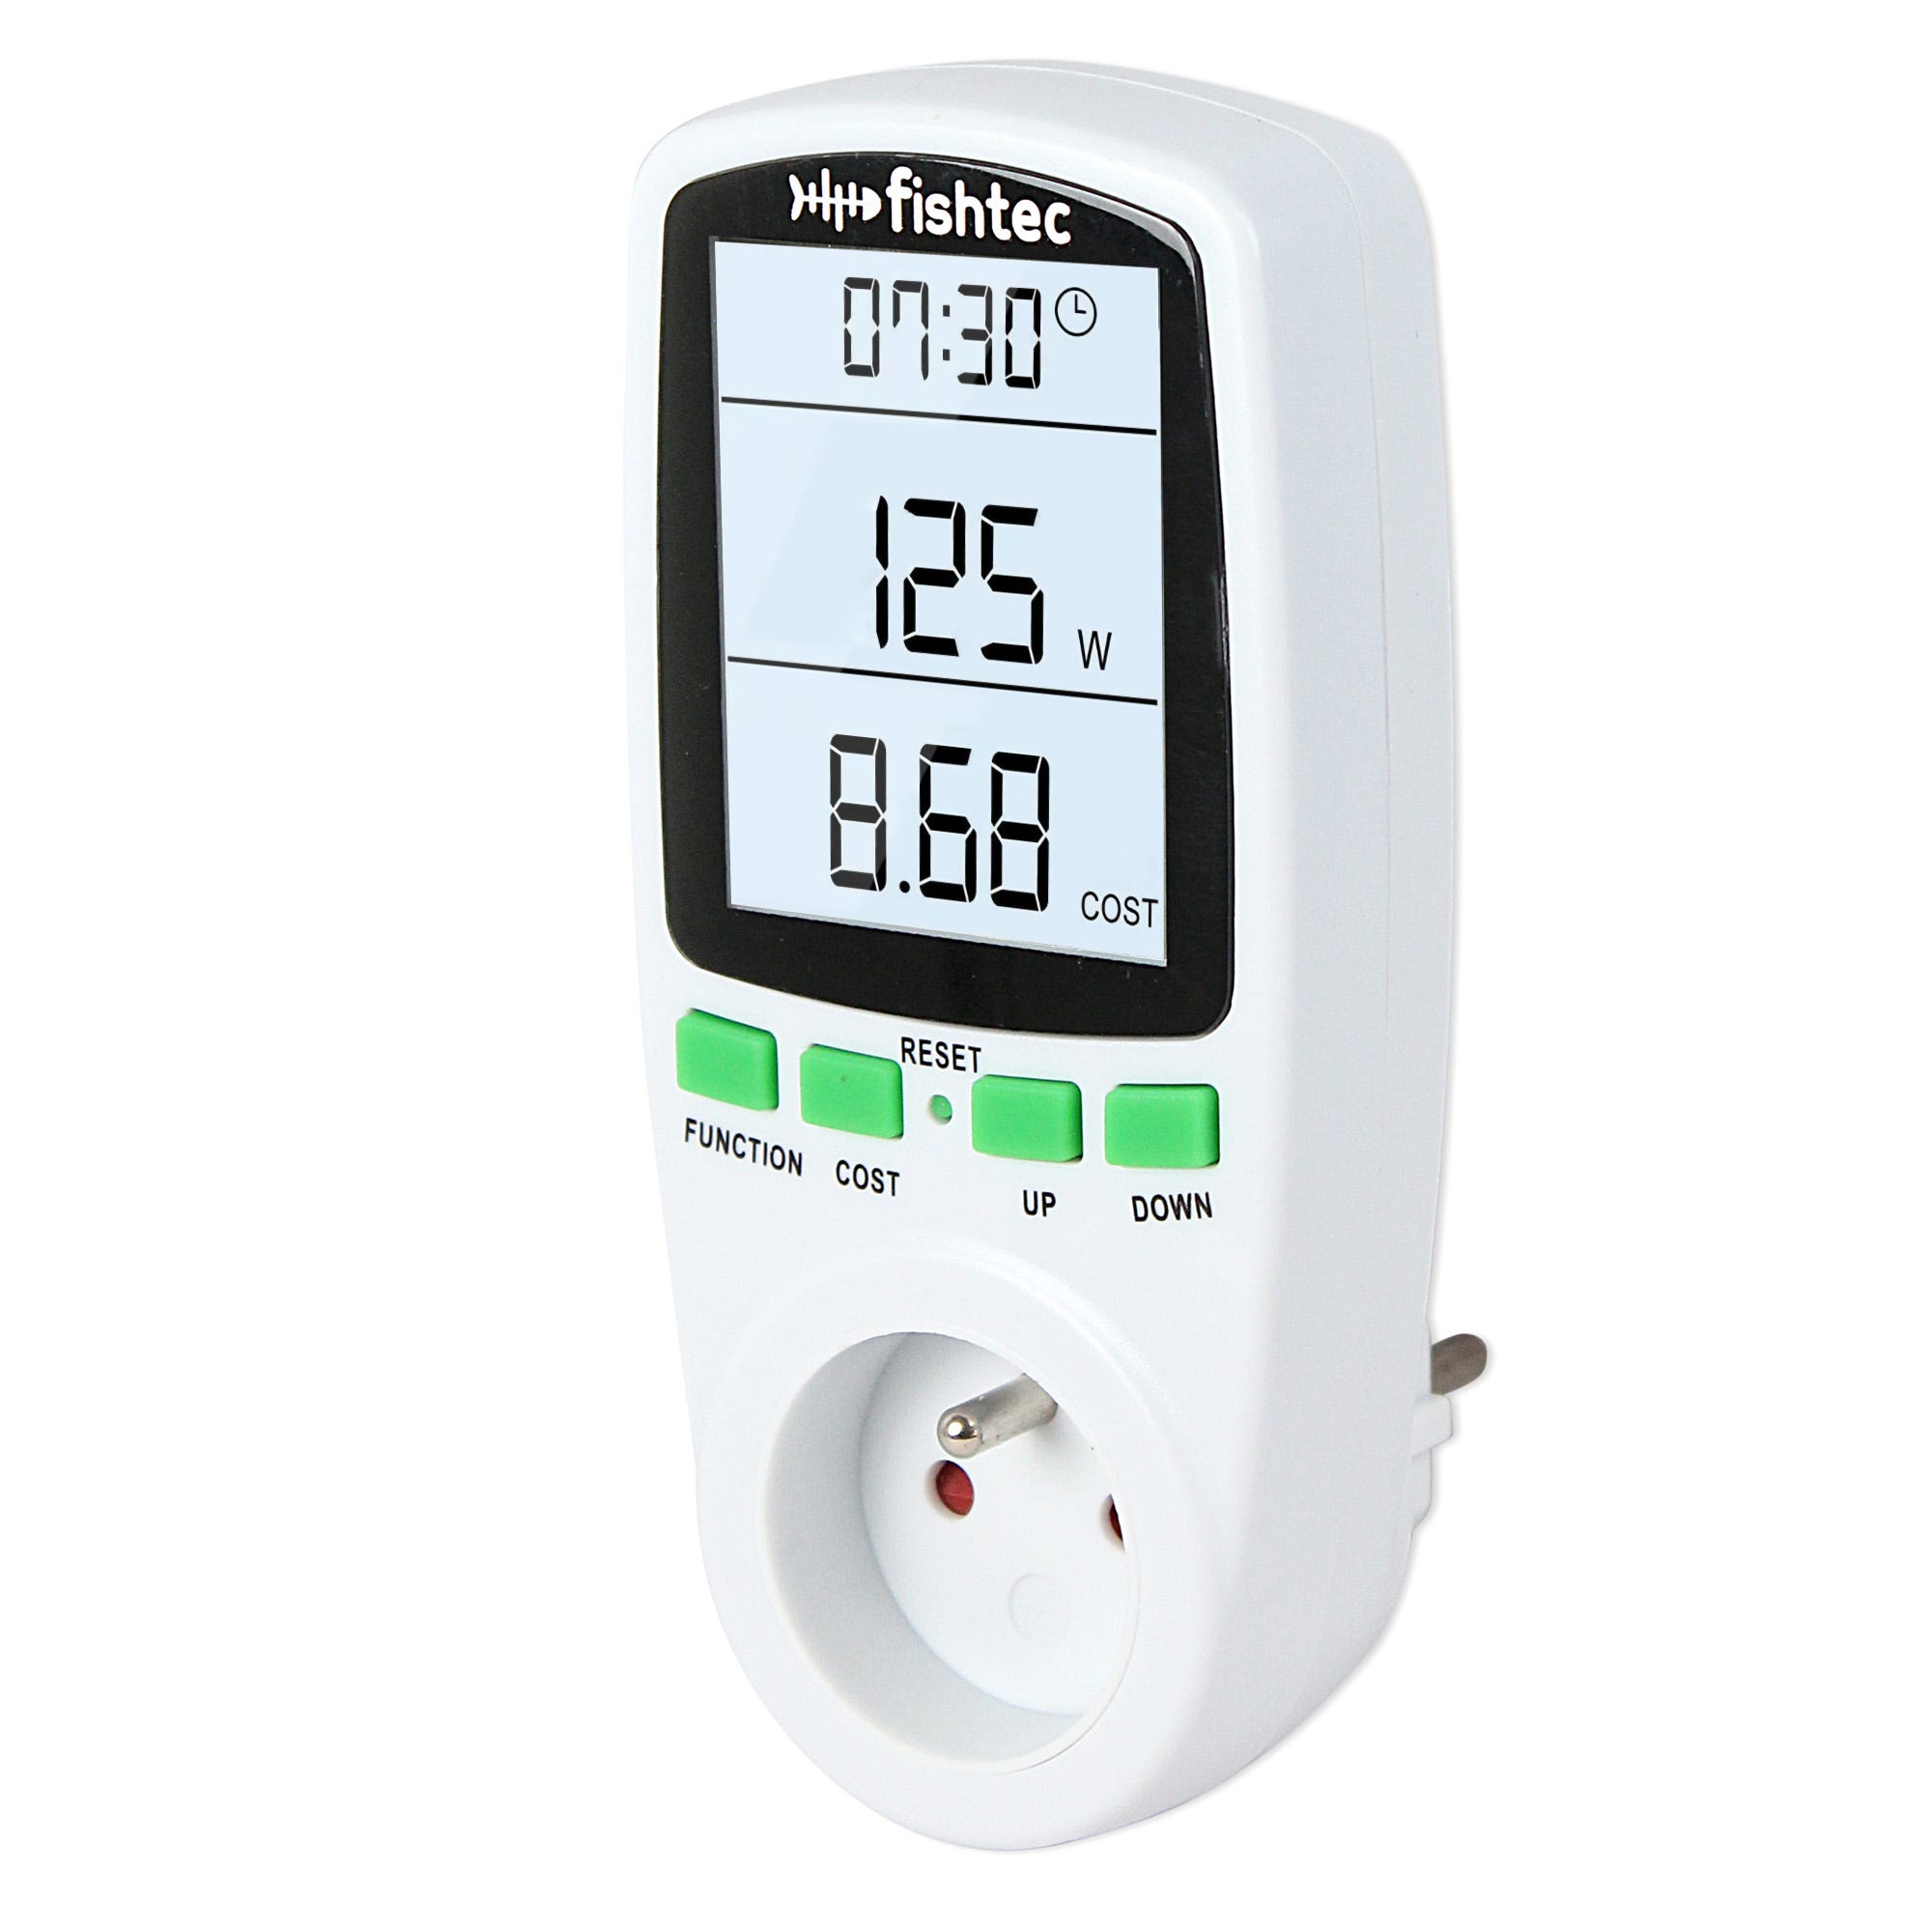 Consommation d'énergie Eqwergy - prise mesureur d'énergie/wattmètre